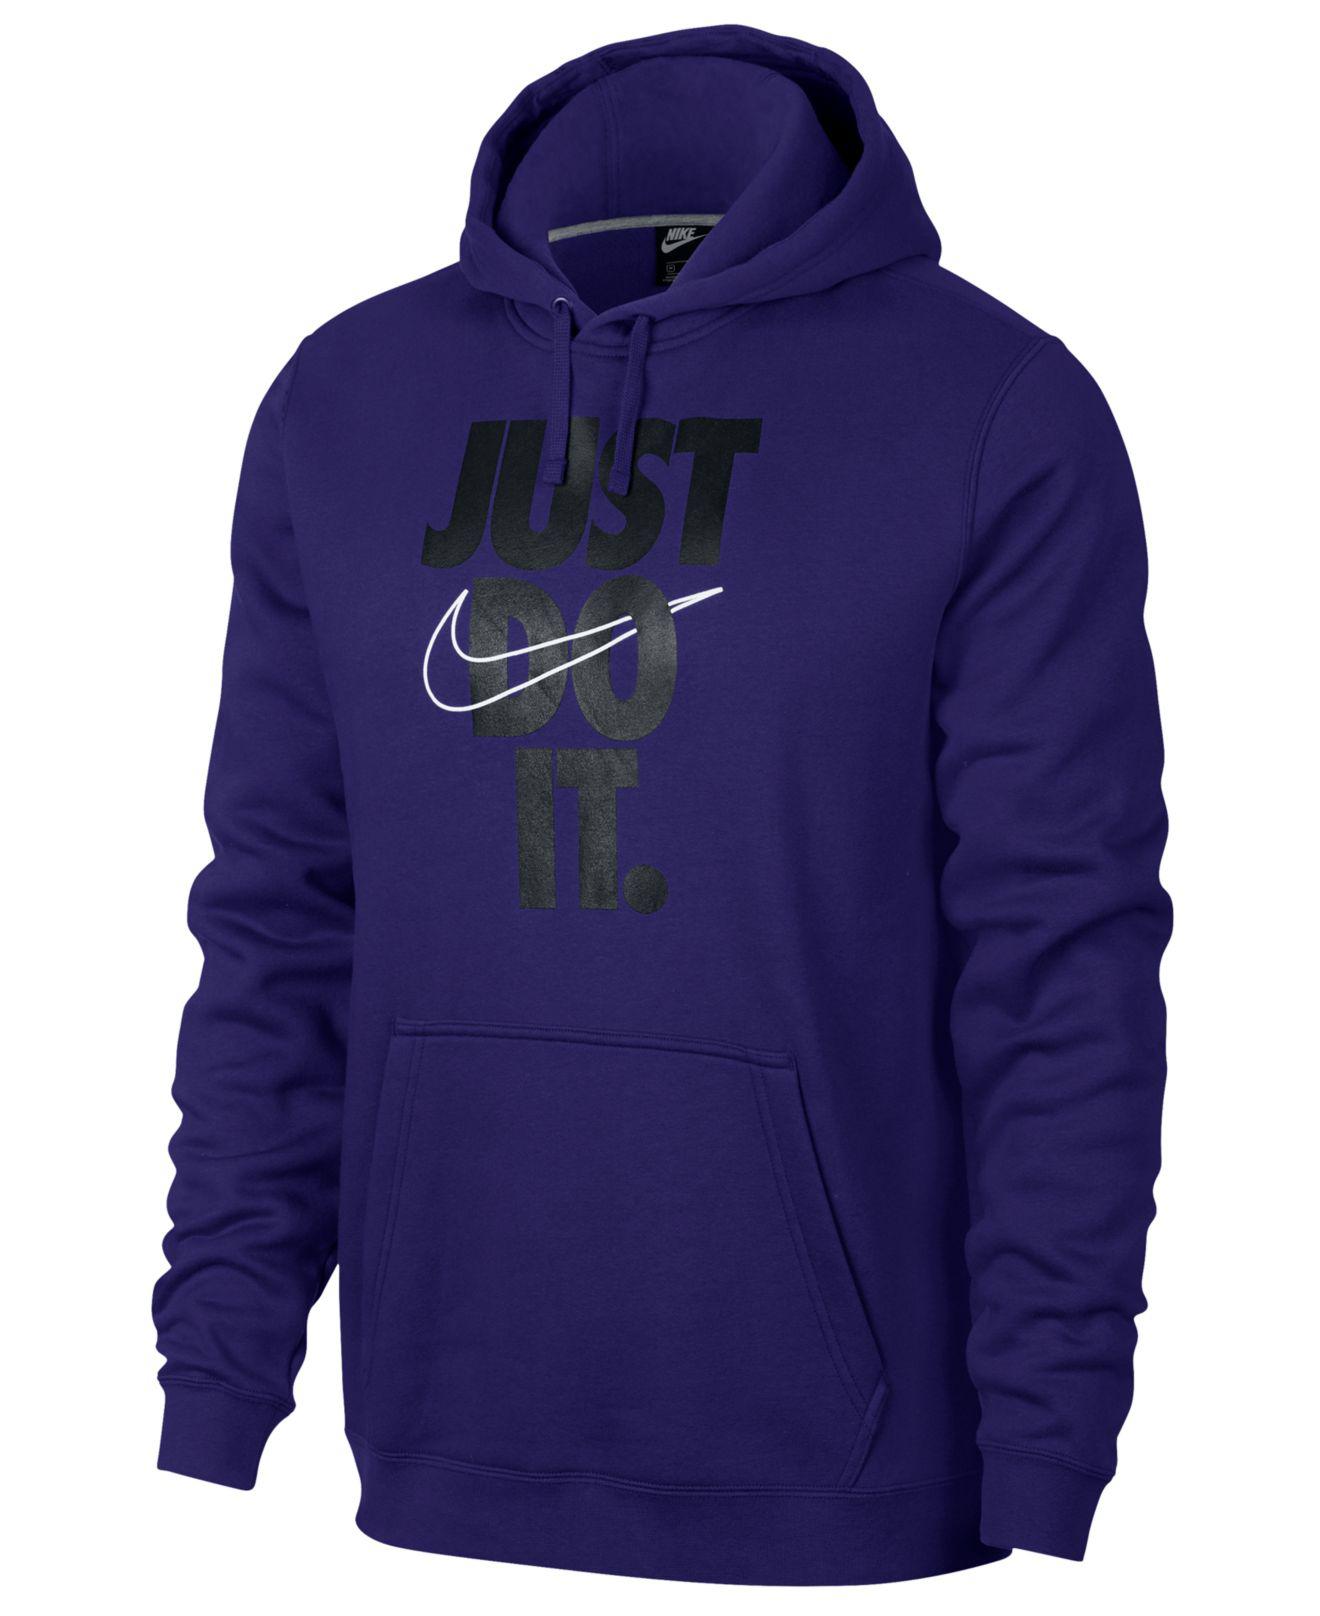 nike just do it hoodie purple